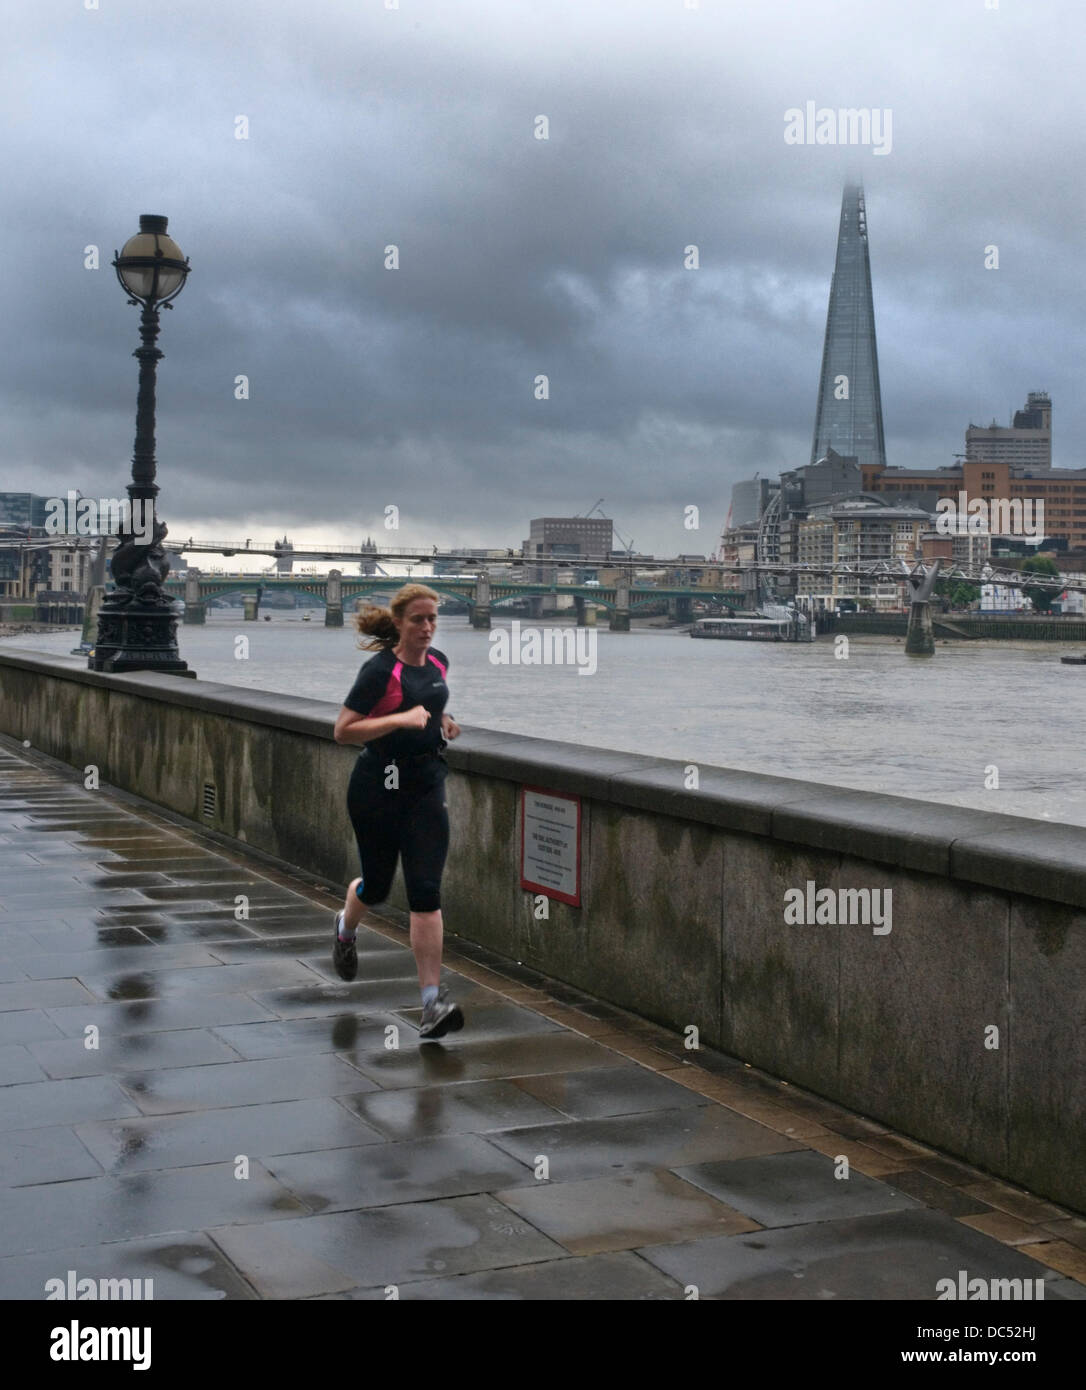 London, UK. 9. August 2013. Regen Wolken hängen schwer über Londons höchstes Gebäude als die UK dürfte sich den Regen nach Wochen von heißem Wetter begrüßen zu dürfen. Bildnachweis: Paul Swinney/Alamy Live-Nachrichten Stockfoto